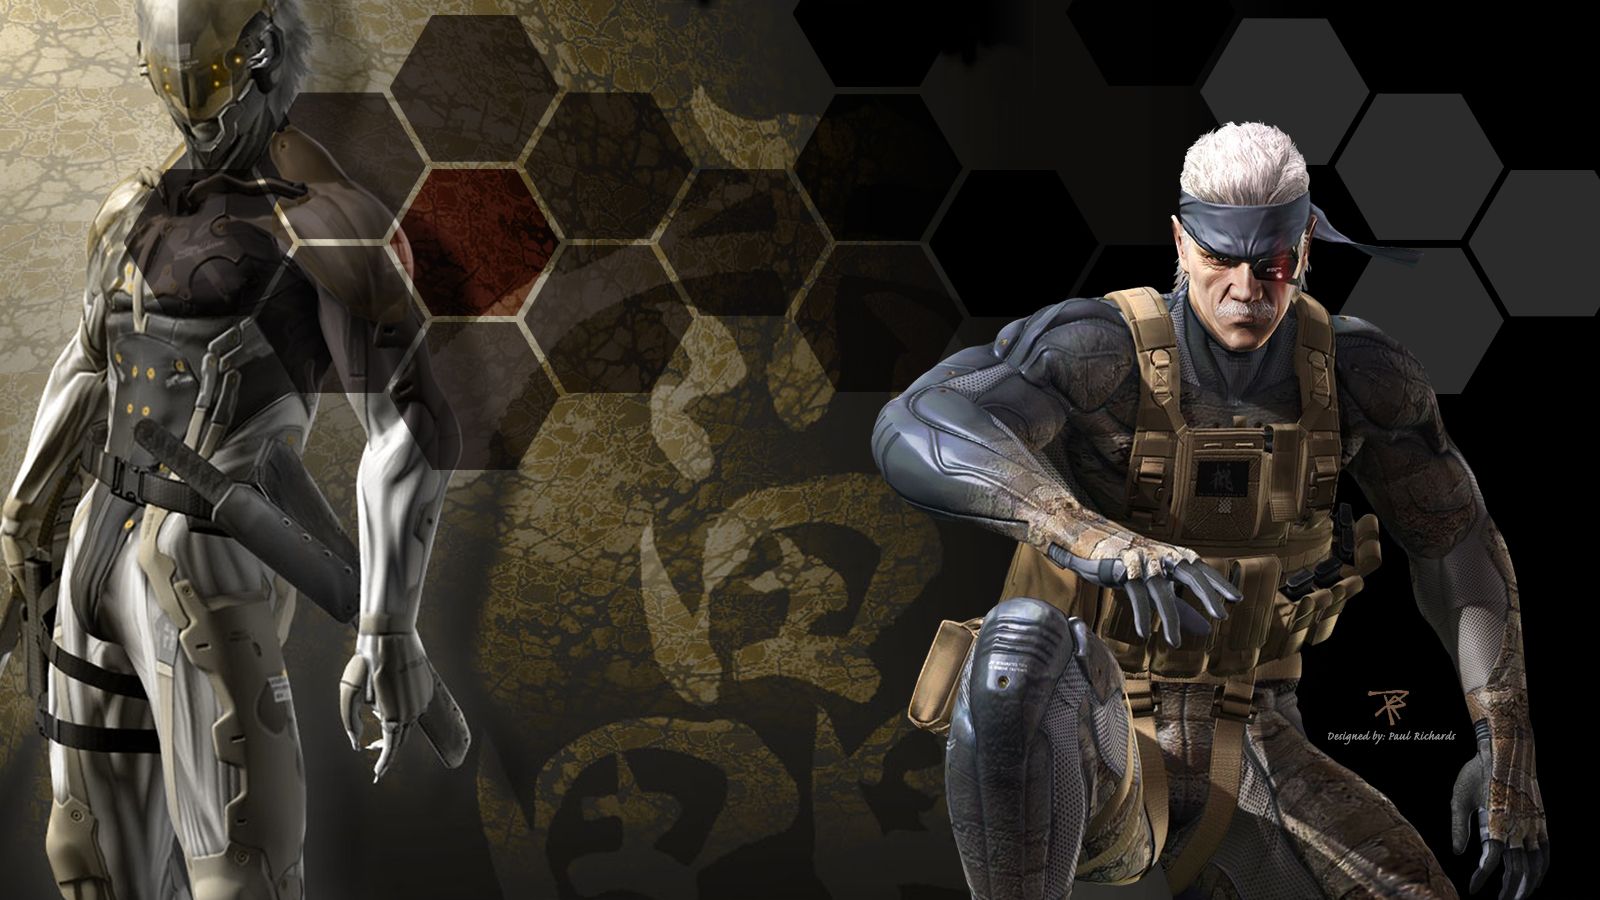 Metal Gear Solid 4 wallpapers | Metal gear solid 4 fan's blog